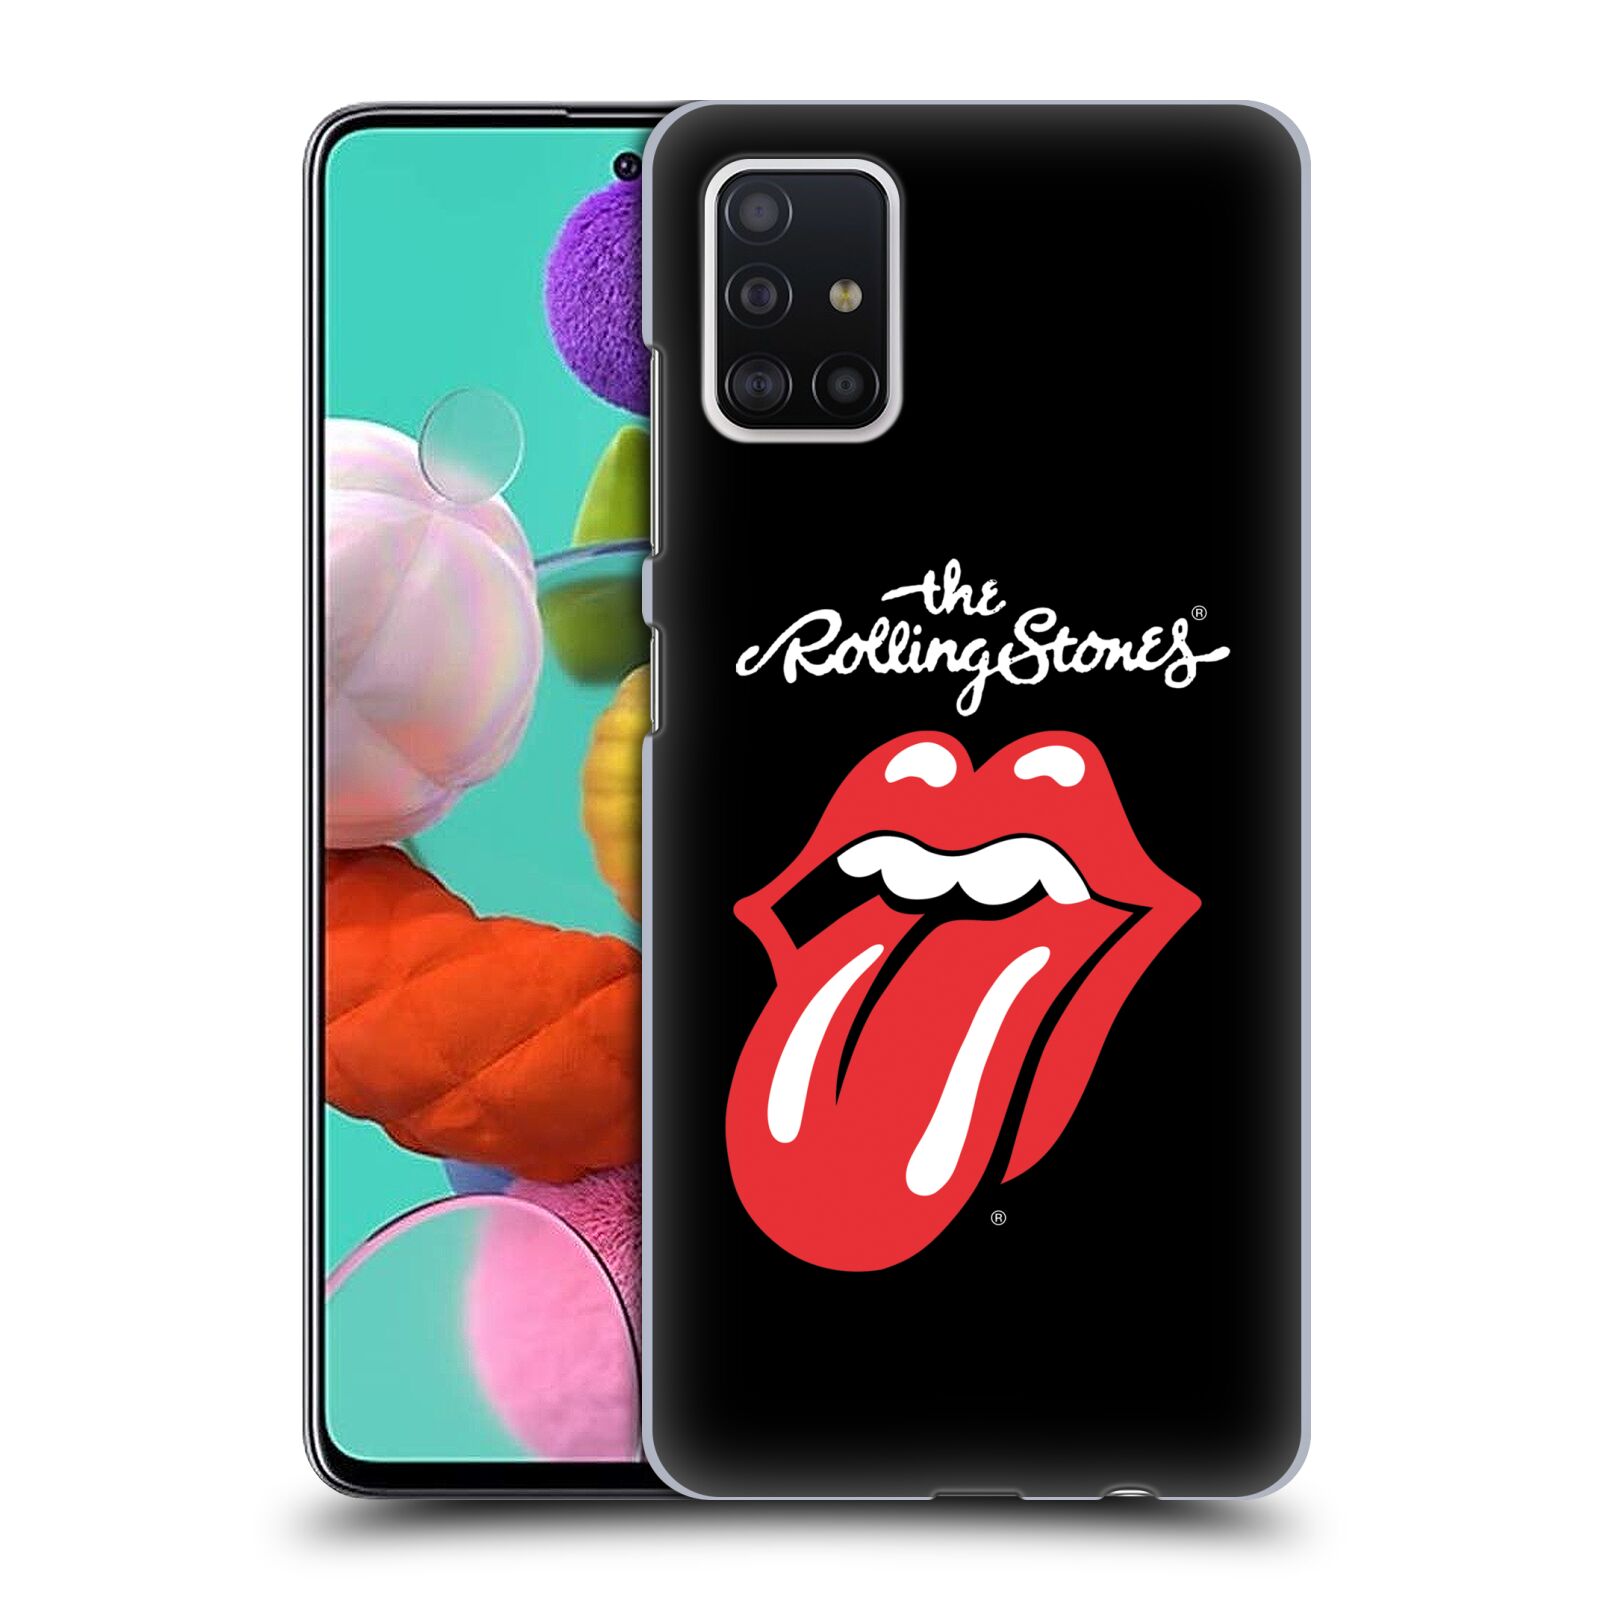 Plastové pouzdro na mobil Samsung Galaxy A51 - Head Case - The Rolling Stones - Classic Lick (Plastový kryt, pouzdro, obal na mobilní telefon Samsung Galaxy A51 A515F Dual SIM s motivem The Rolling Stones - Classic Lick)